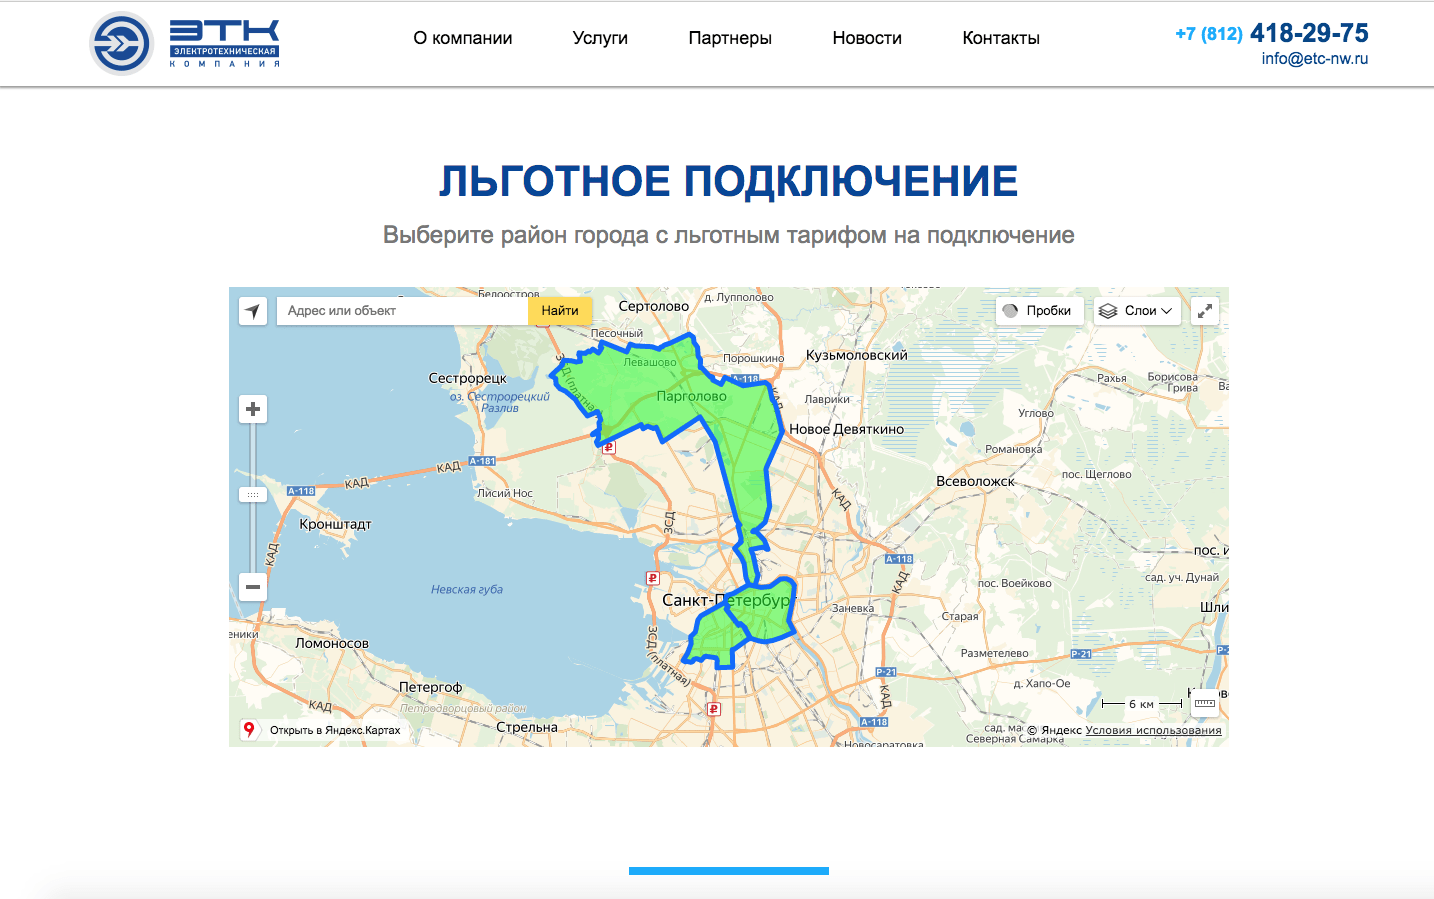 интерактивная карта районов города